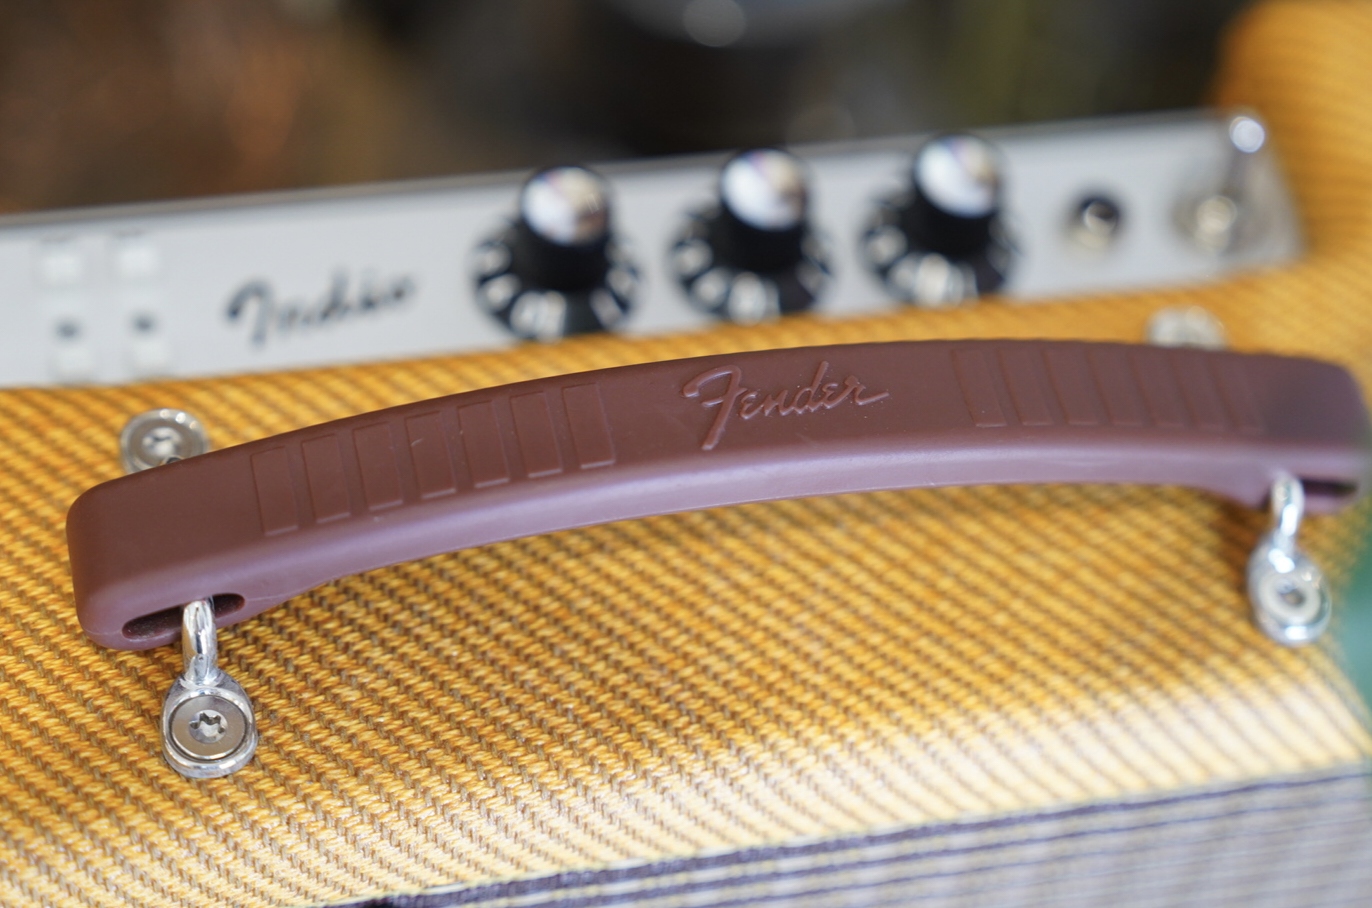 高顏值藍芽喇叭推薦「Fender Indio 2」戶外活動25小時續航、潮流時尚IFA 最佳藍牙音響